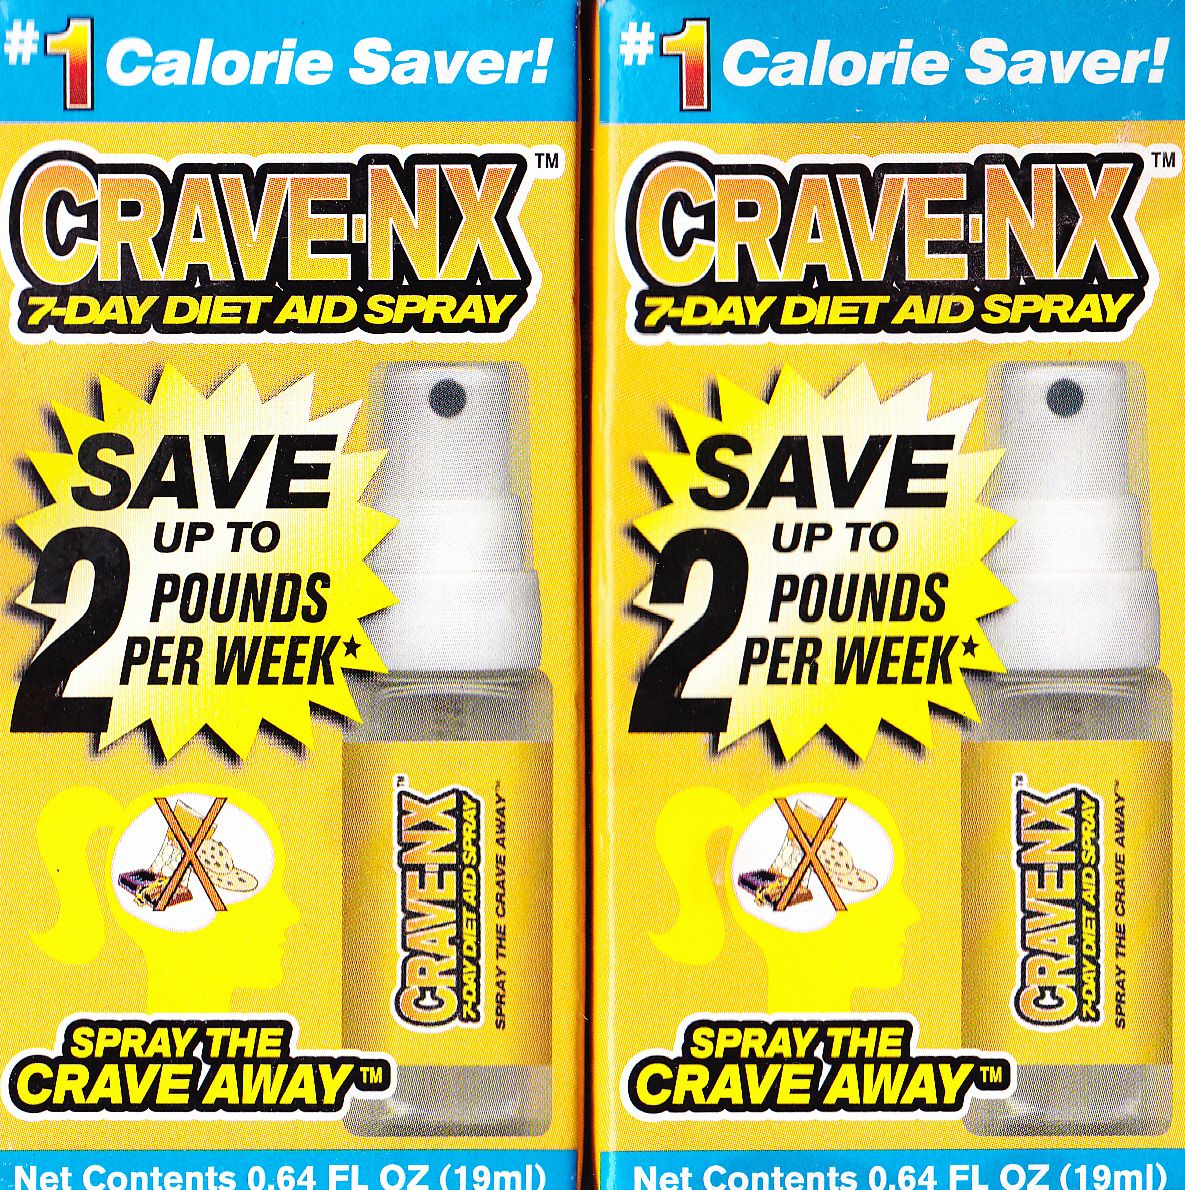 CRAVE NX Orange Flavor 7 Day Diet Aid Spray Weight Loss 64oz 19ml x